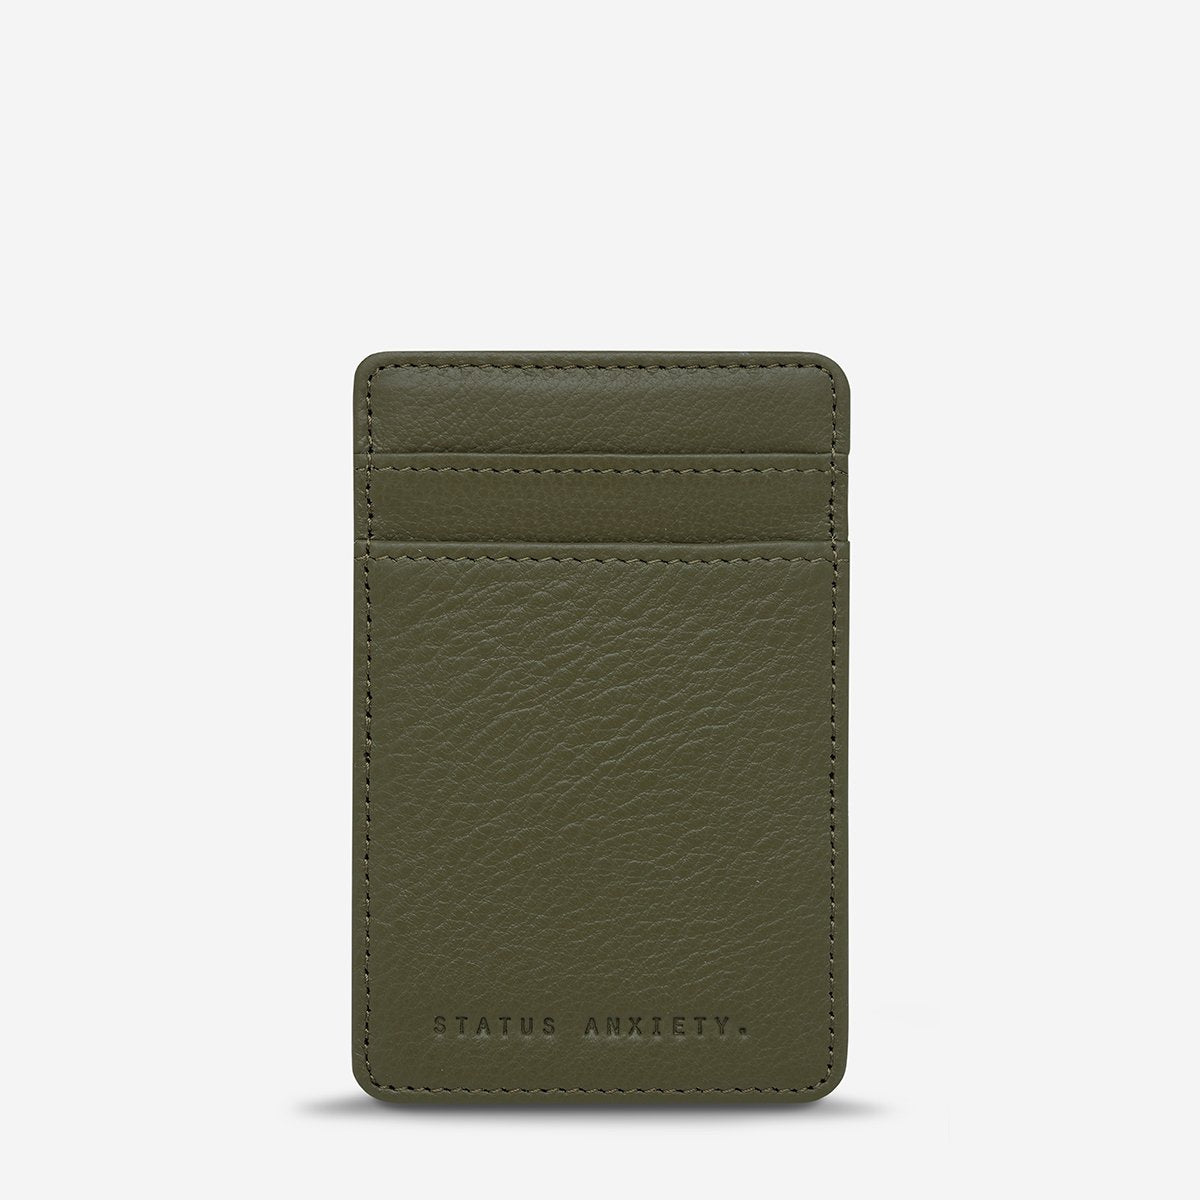 Flip Leather Wallet in Khaki